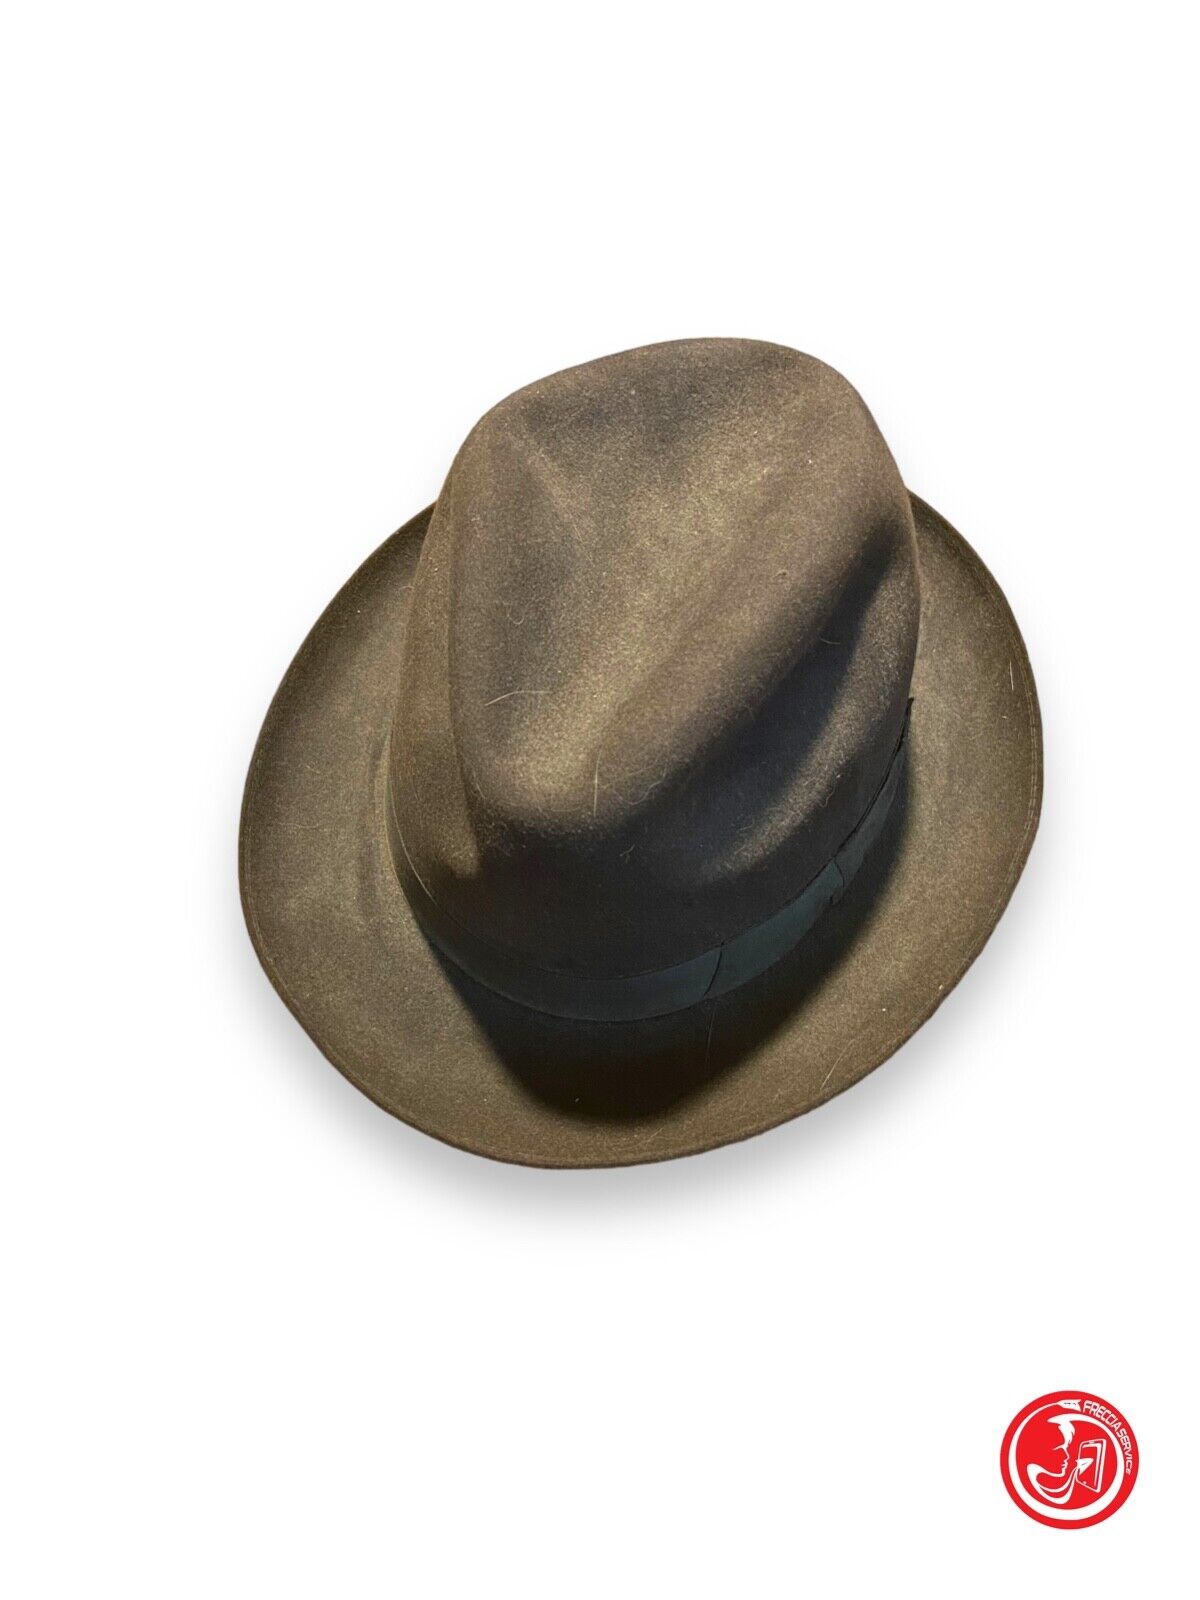 Cowboy hat - E. Vaglio Loro - Borsalino Grand Prix Paris 1900 